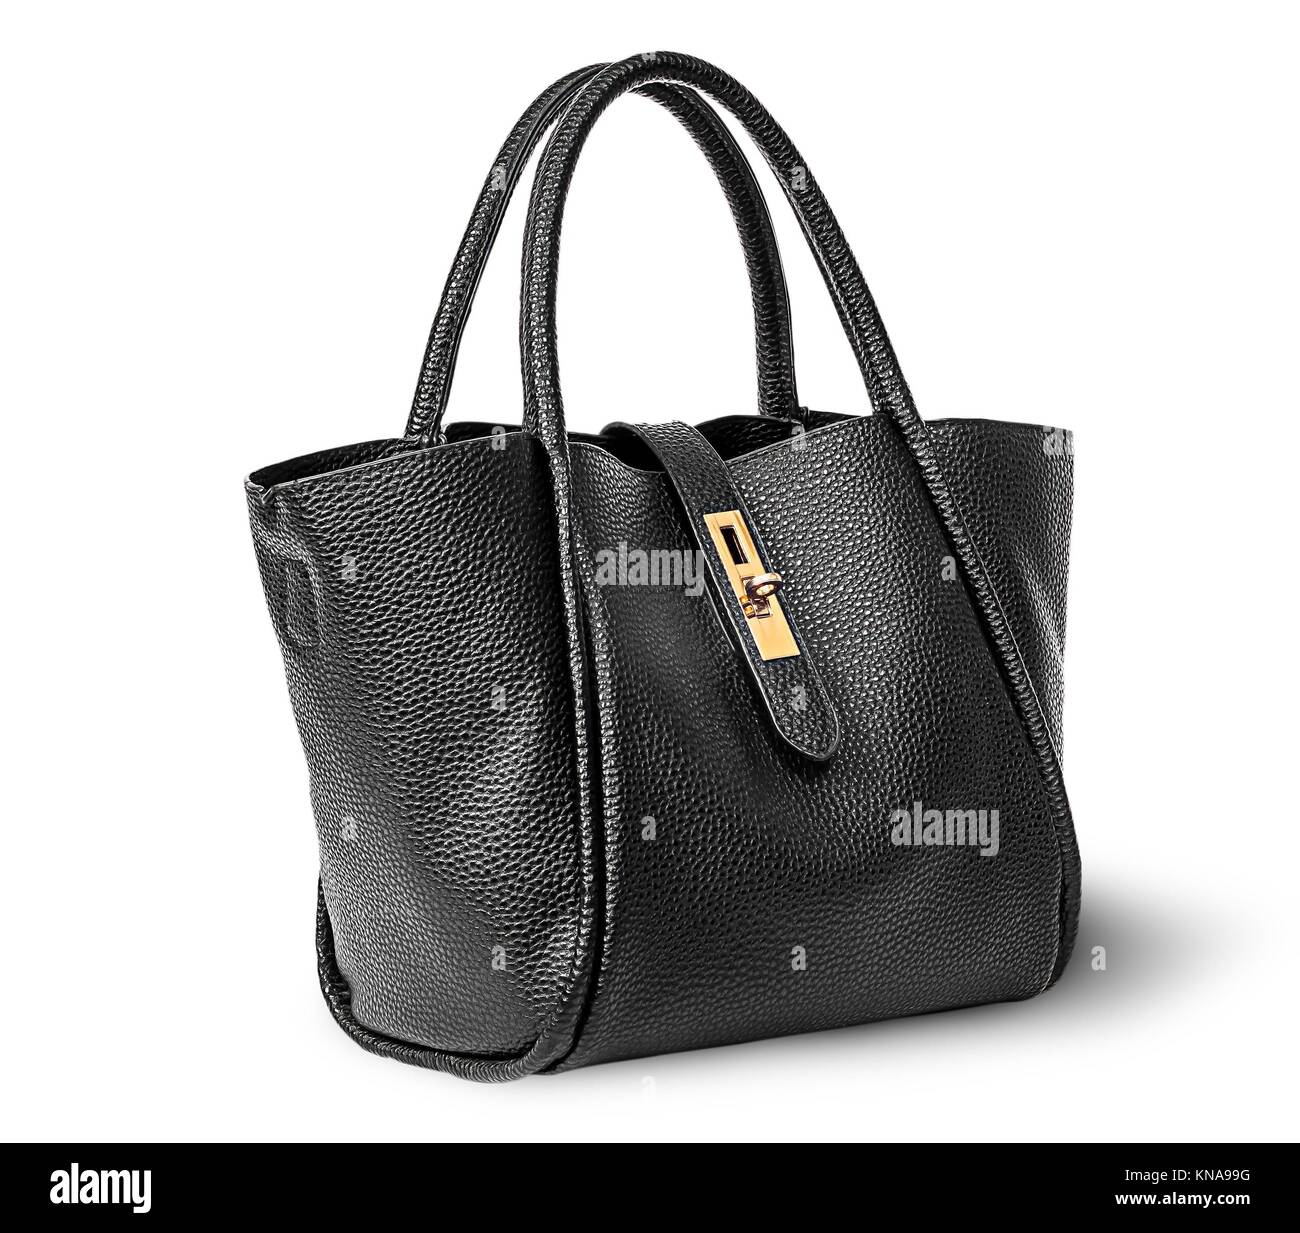 Schwarz Elegante Leder Damen Handtasche Gedreht Auf Weissem Hintergrund Stockfotografie Alamy